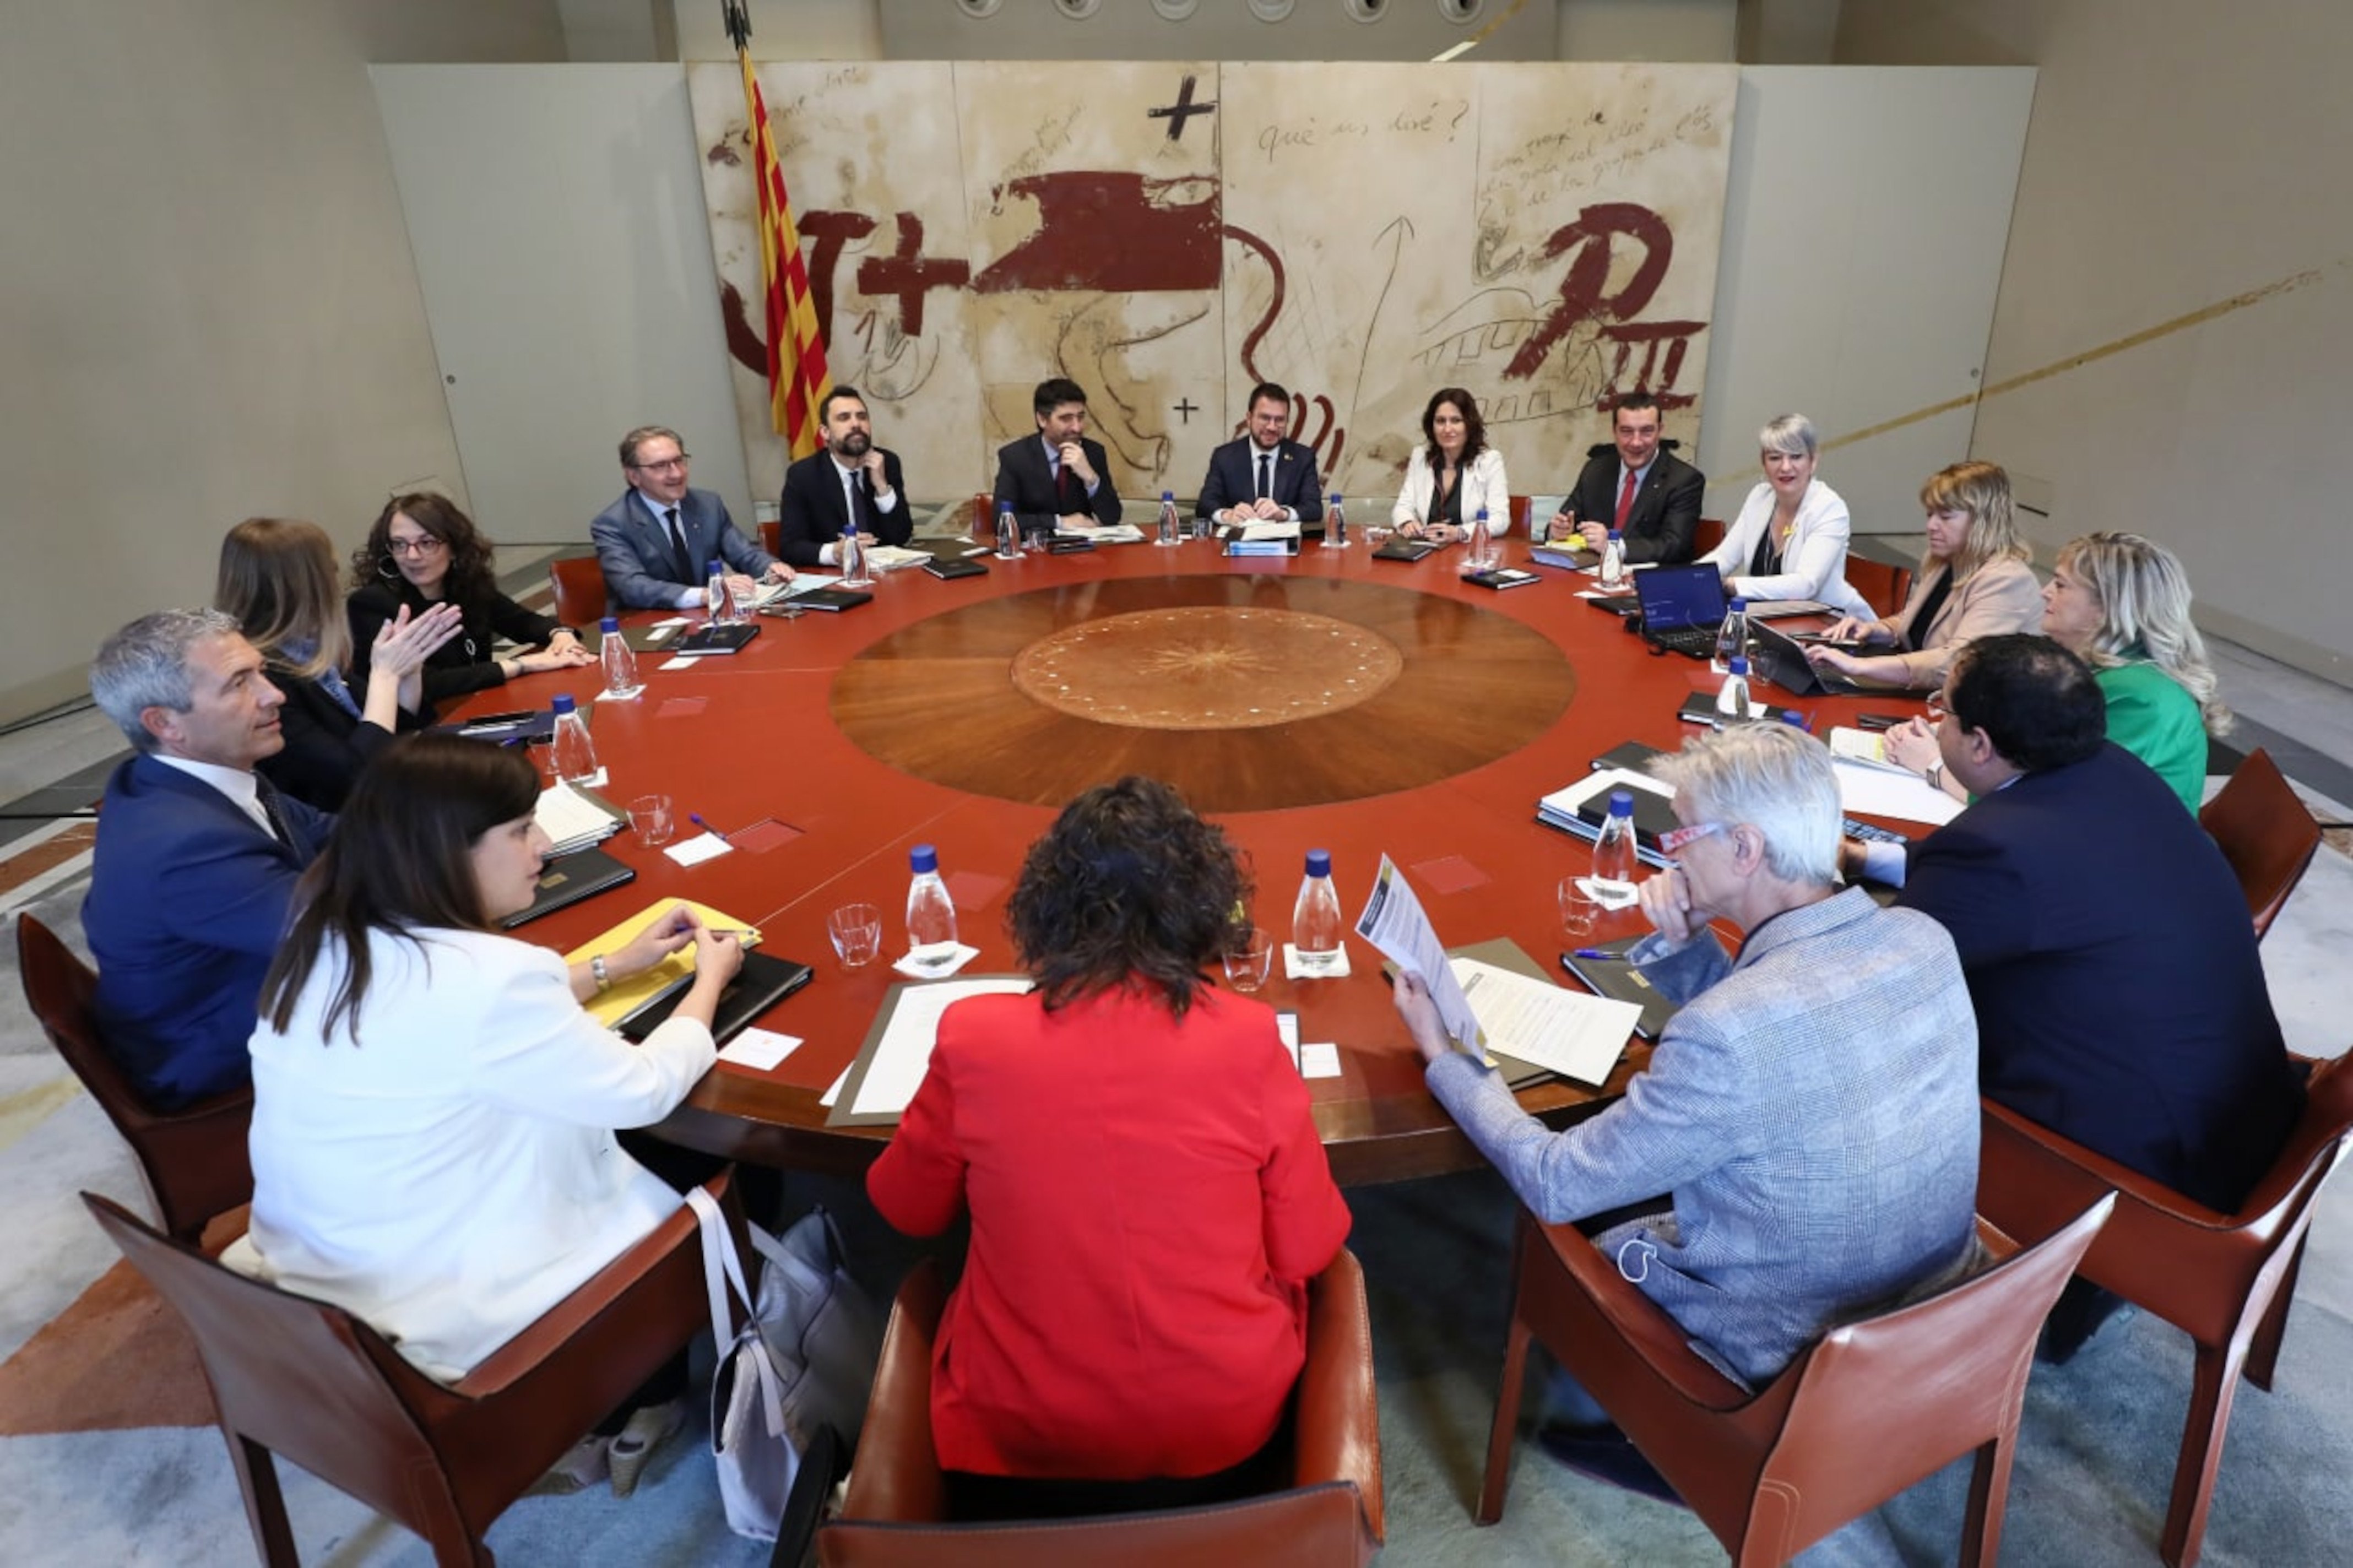 El Govern exigeix explicacions sobre les inversions: "L'Estat ha abandonat els catalans"